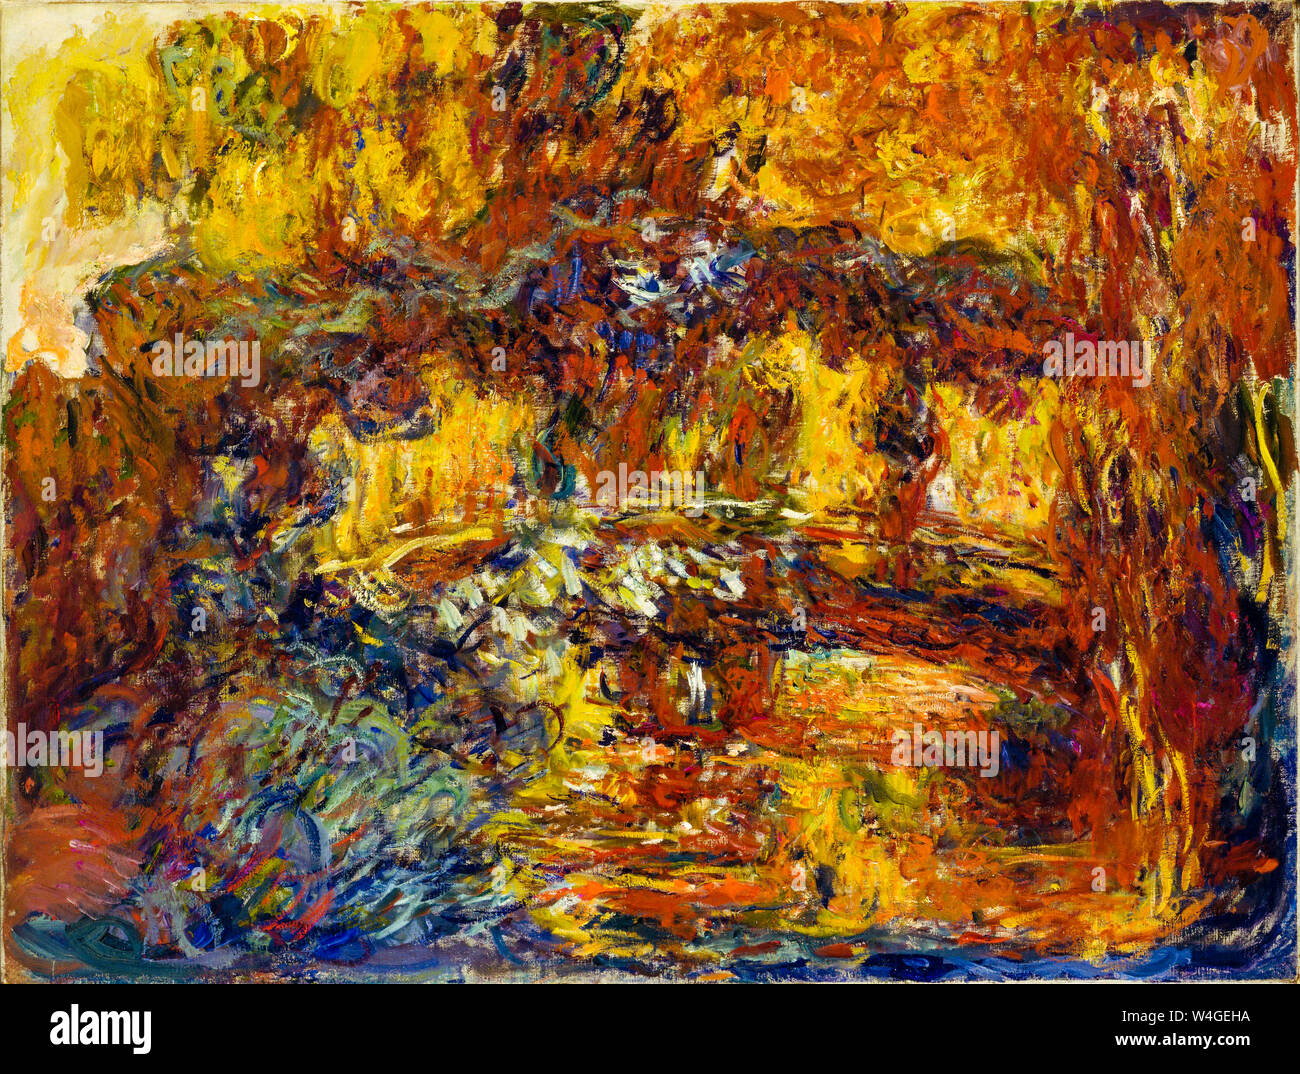 Claude Monet, la passerelle japonaise, peinture impressionniste, vers 1920 Banque D'Images